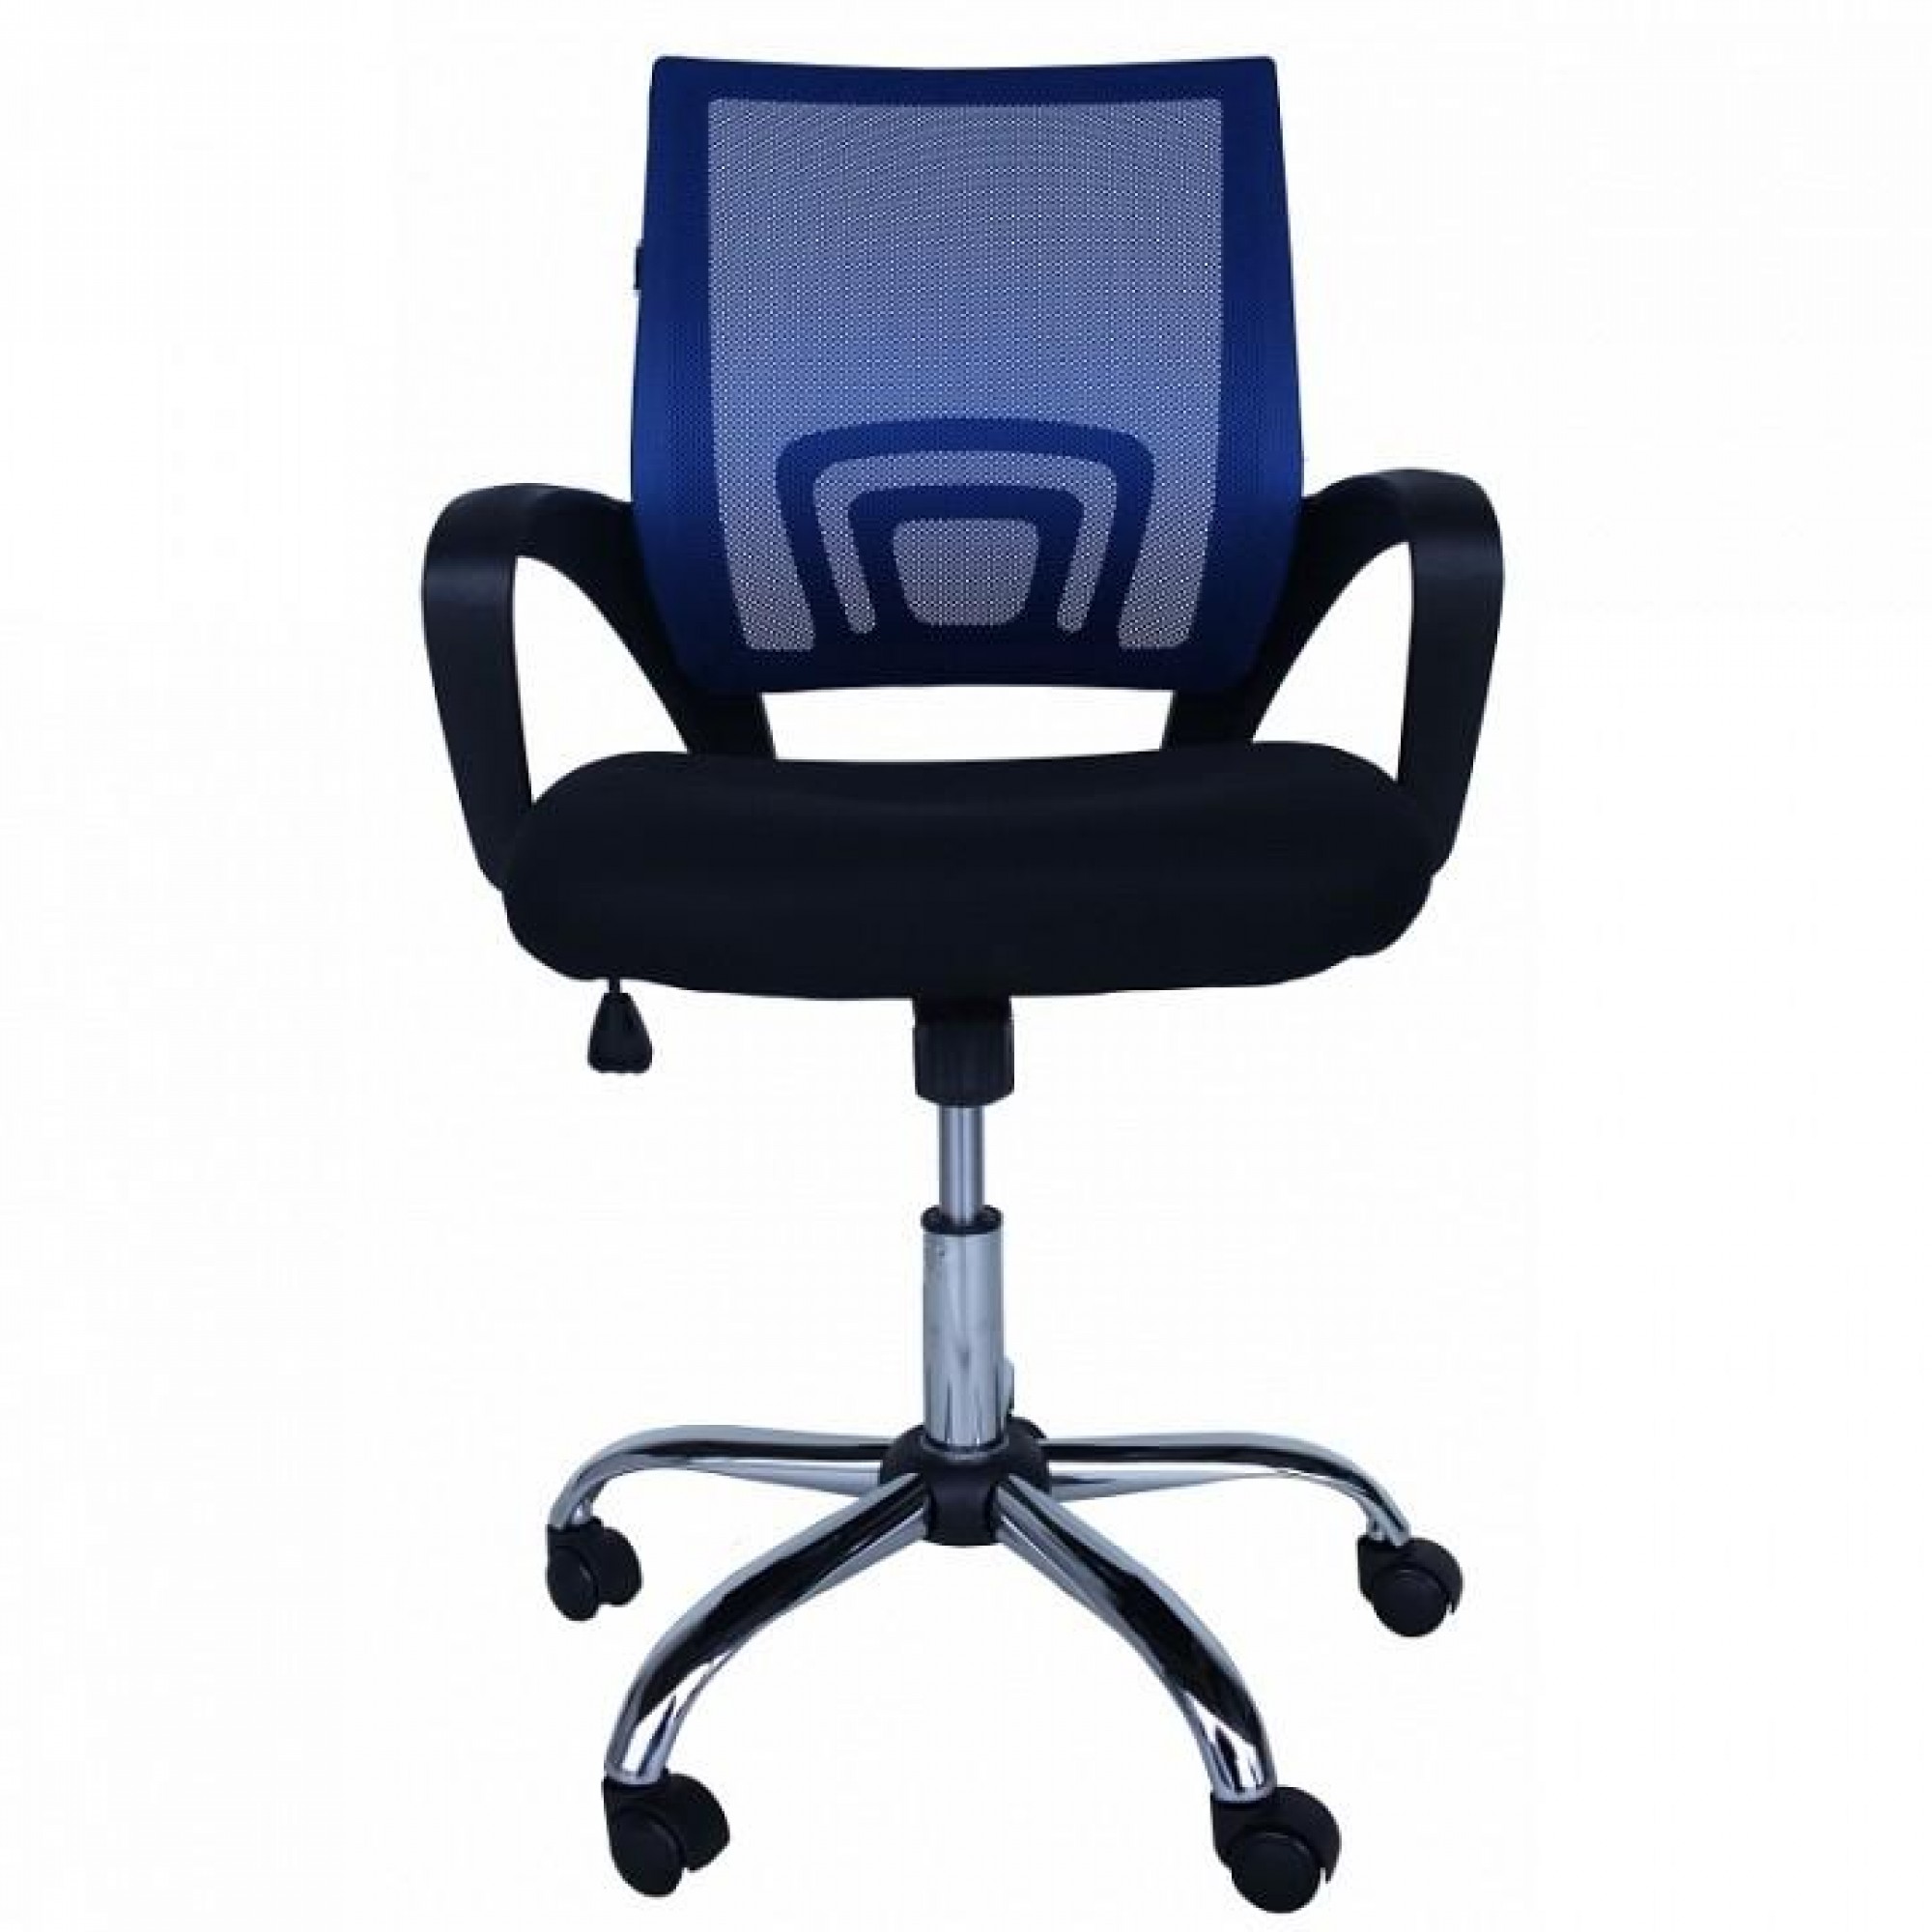 Кресло компьютерное MF-696 404491, MF-696 blue